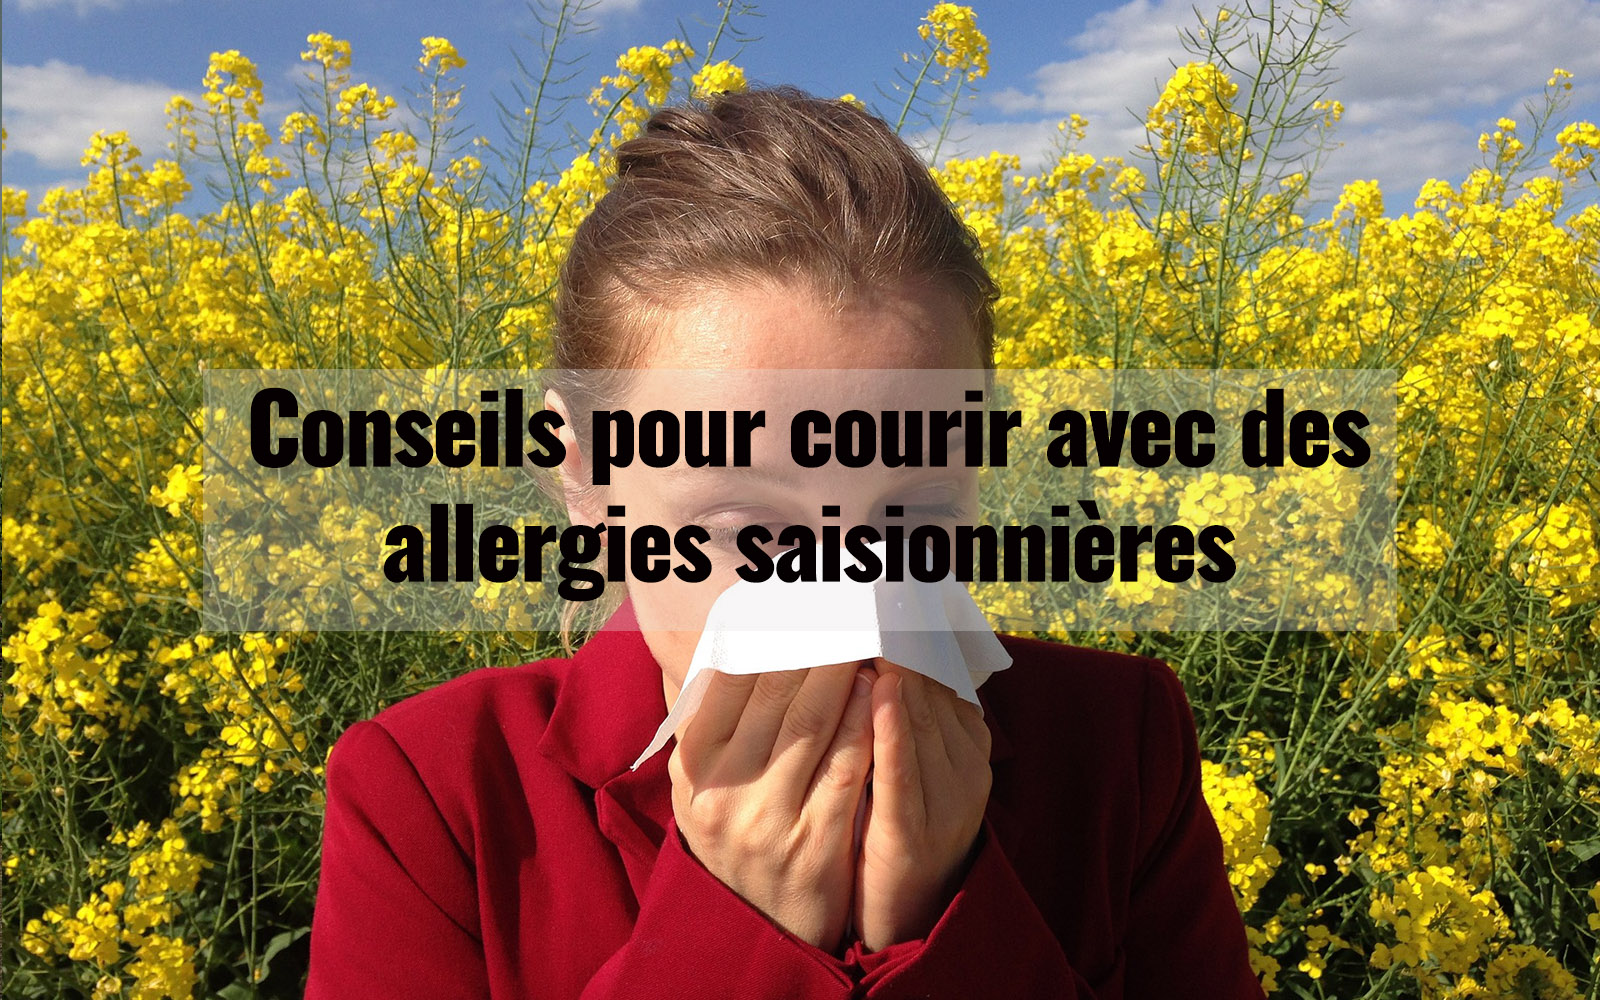 10 Conseils pour courir avec des allergies saisonnières